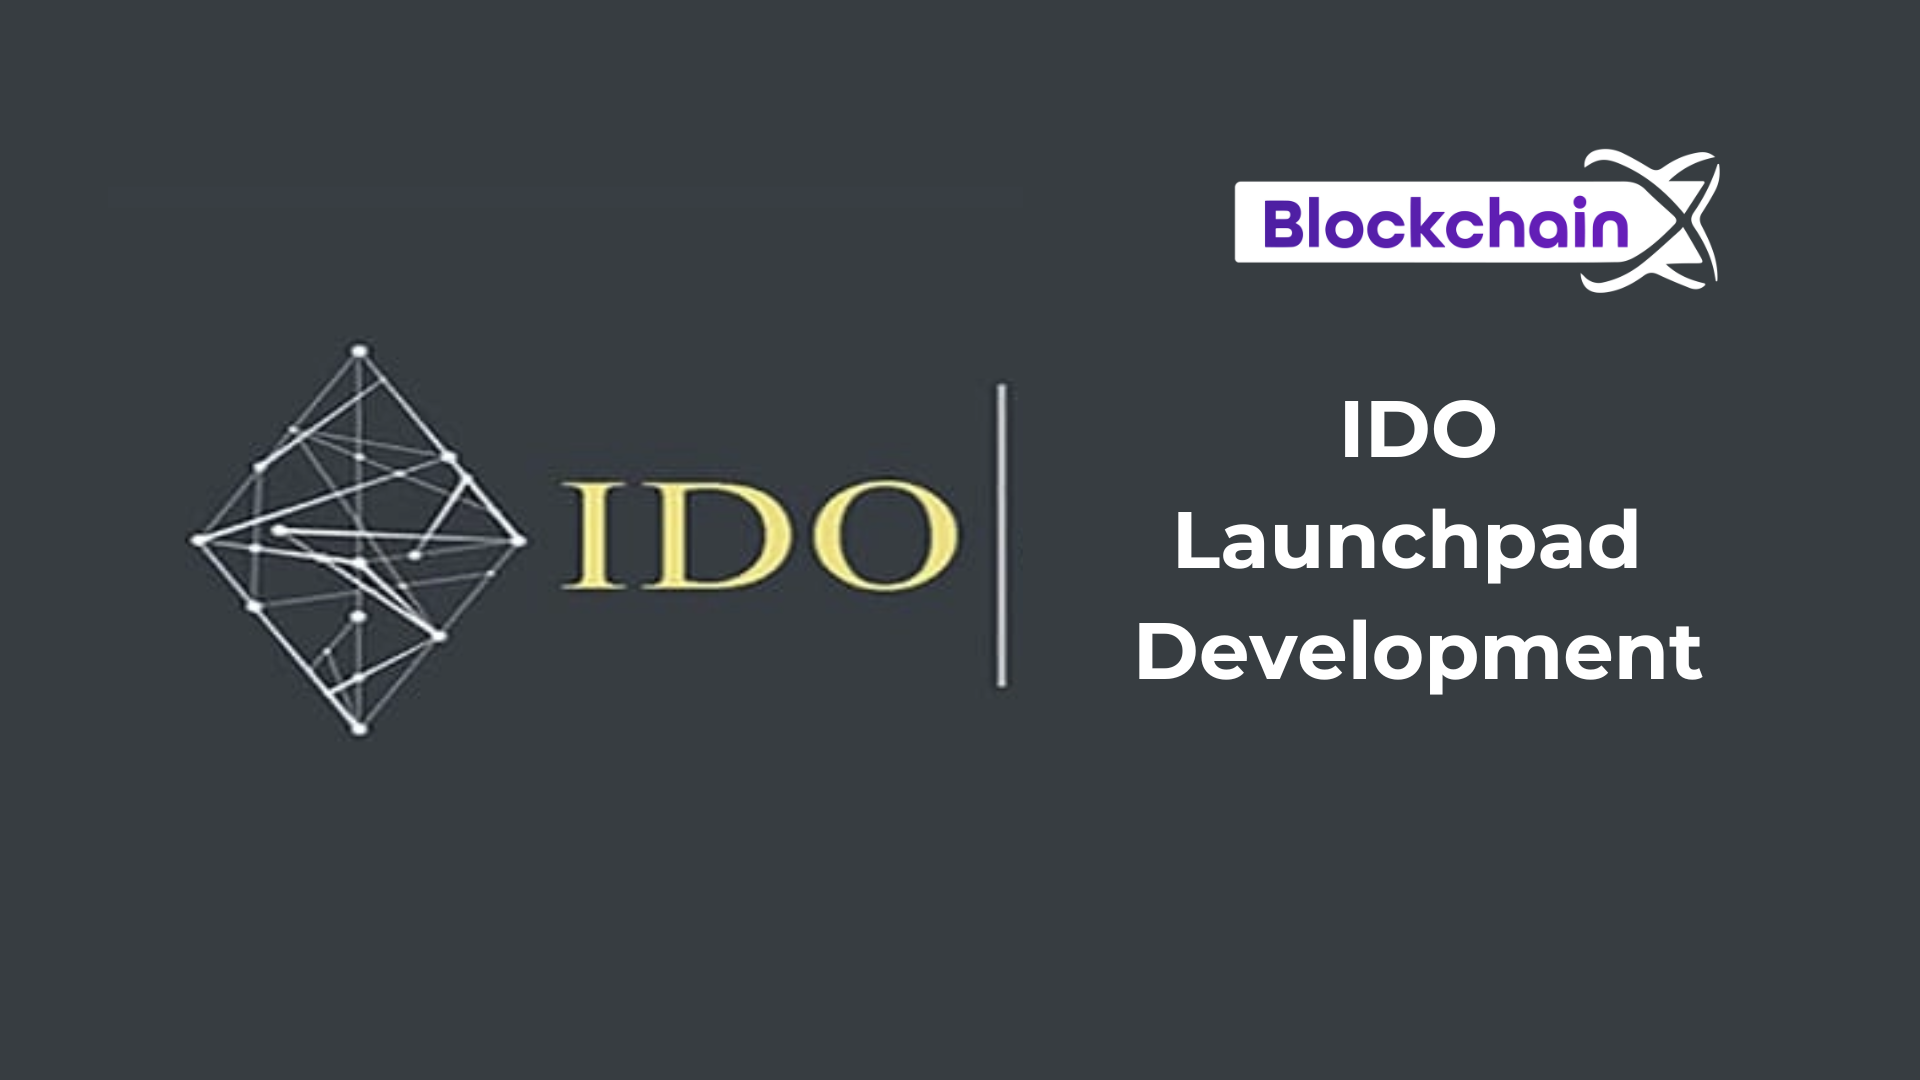 ido Launchpad Development